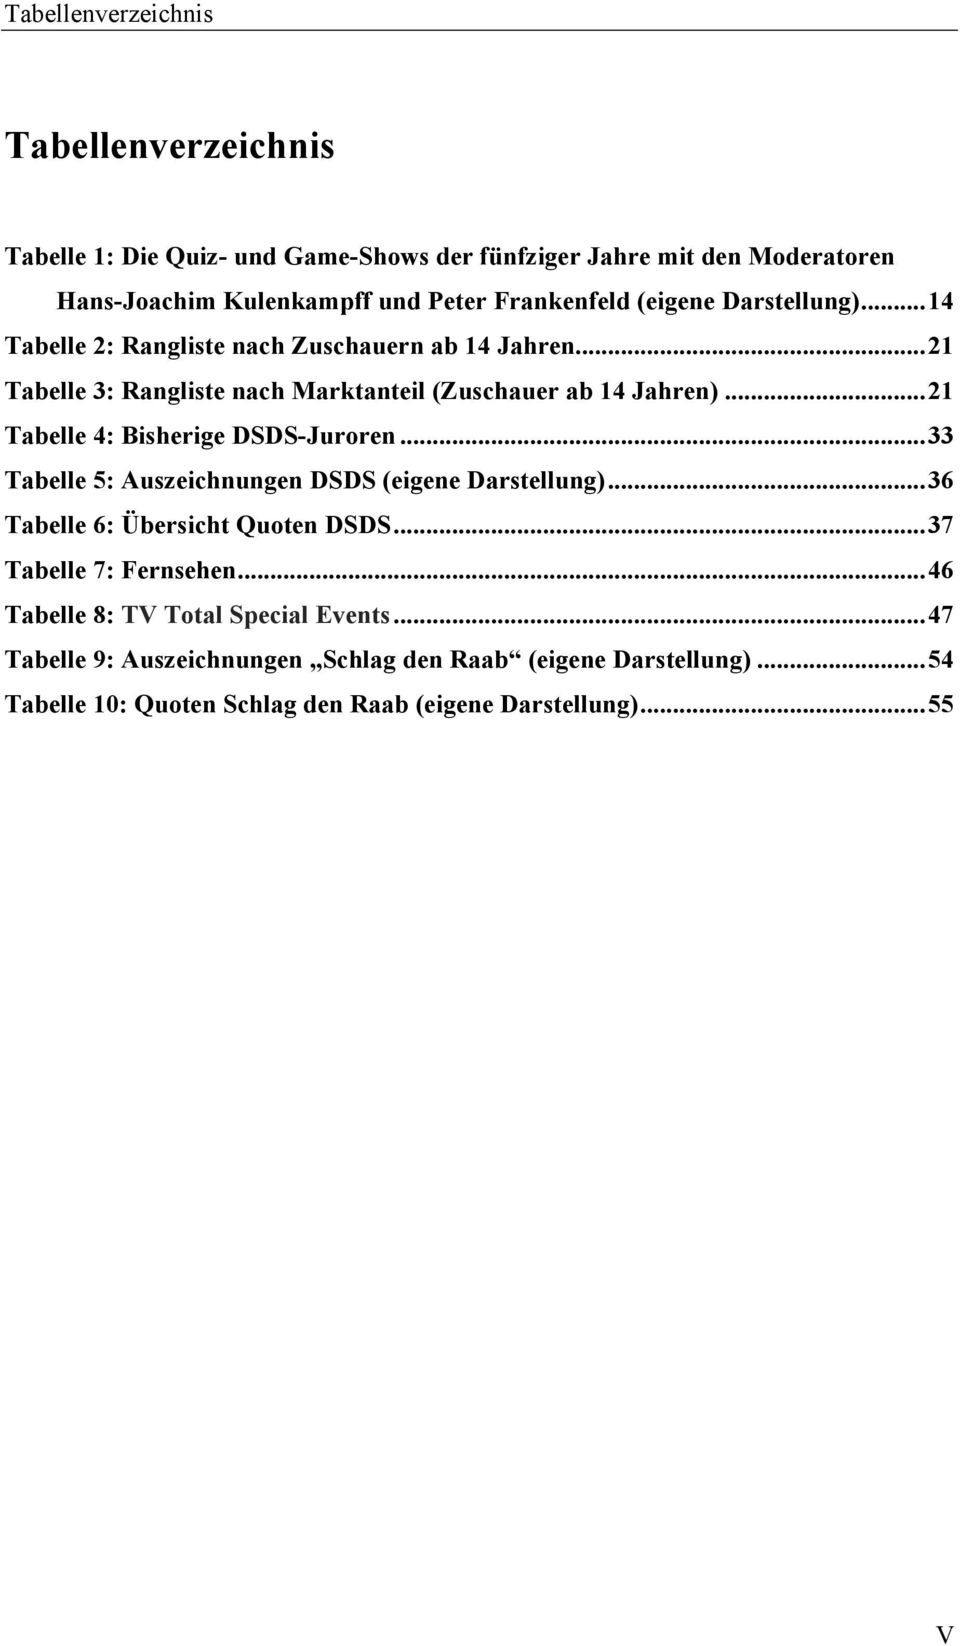 .. 21 Tabelle 4: Bisherige DSDS-Juroren... 33 Tabelle 5: Auszeichnungen DSDS (eigene Darstellung)... 36 Tabelle 6: Übersicht Quoten DSDS... 37 Tabelle 7: Fernsehen.